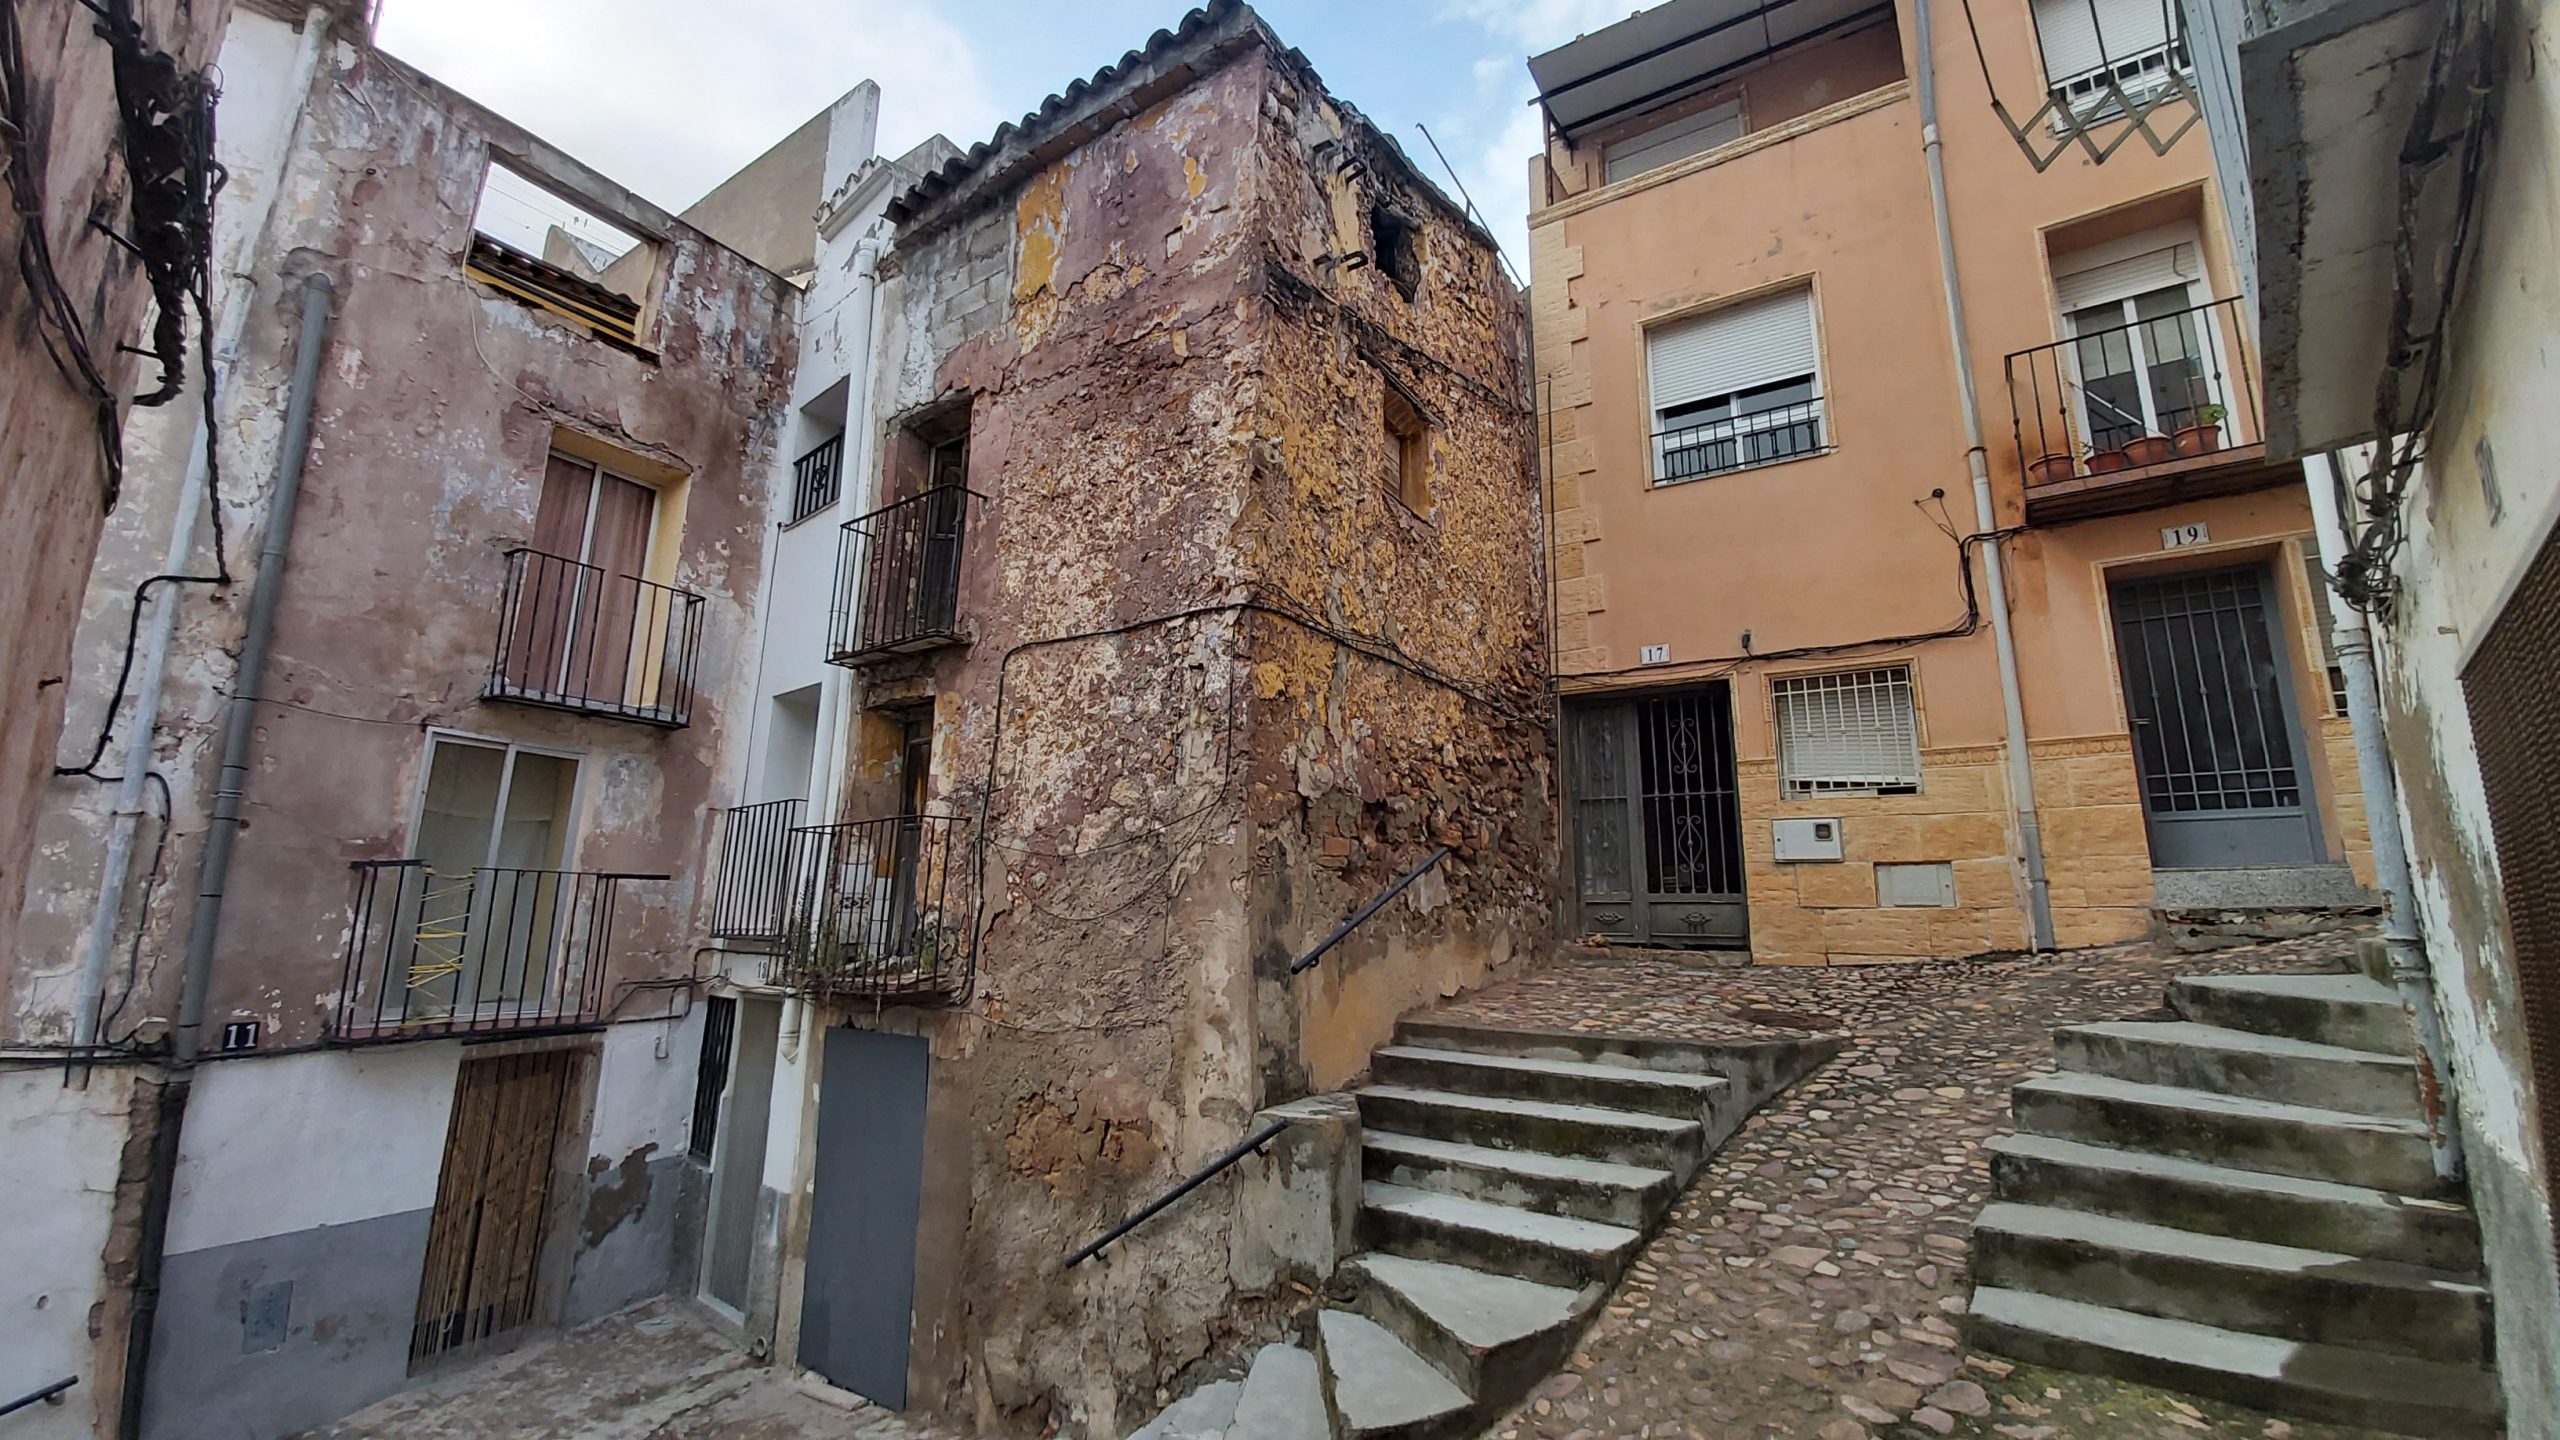 Onda adjudica la rehabilitación de tres casas del casco histórico para cederlas a familias necesitadas por 335.000 €